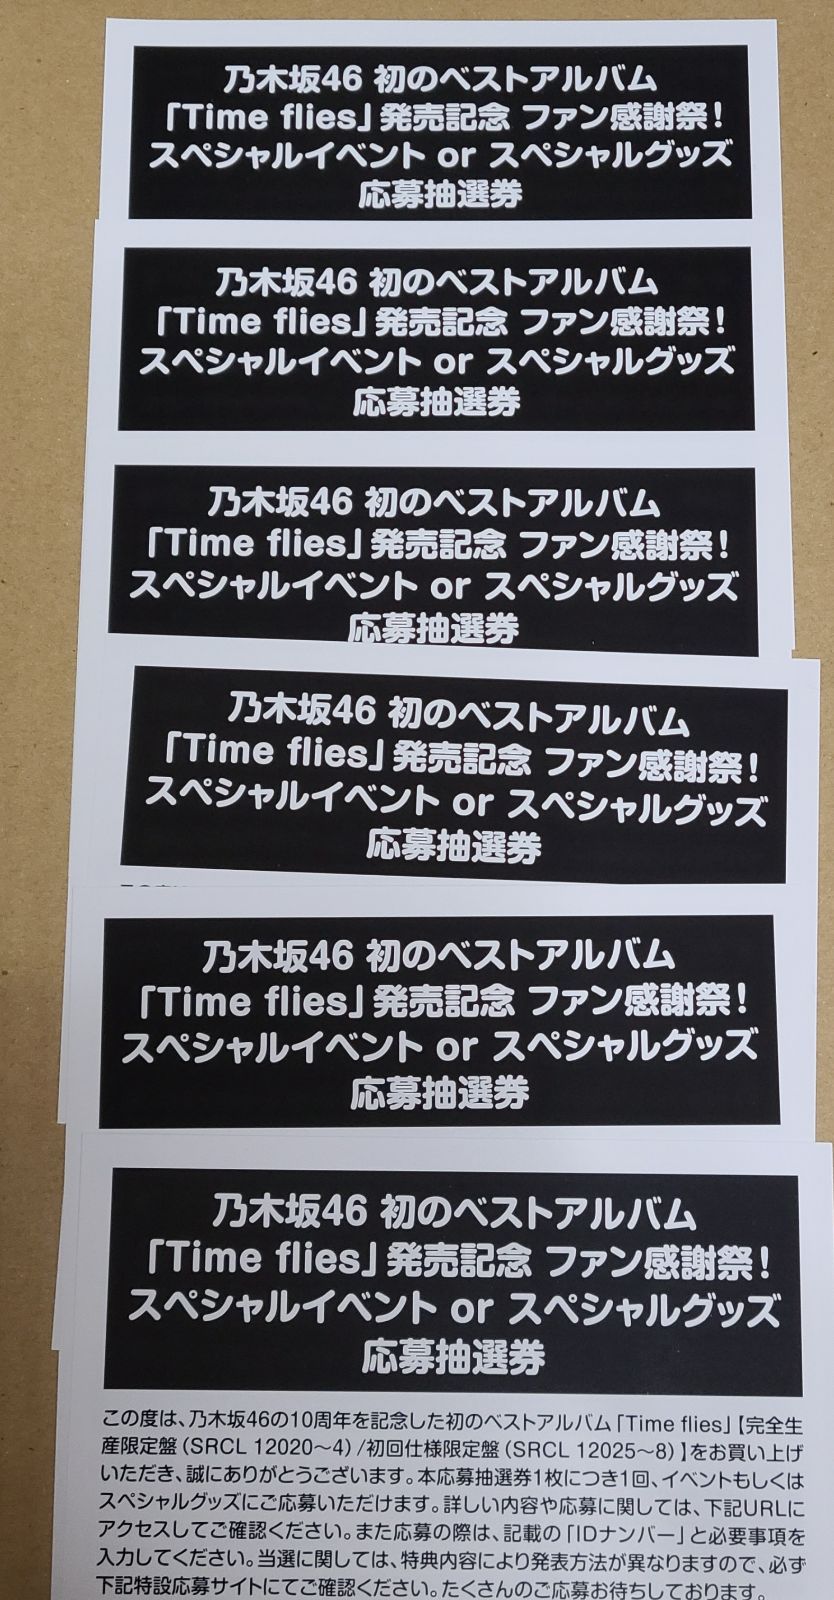 乃木坂46 『Timeflies』 スペシャルイベントorスペシャルグッズ 応募 ...